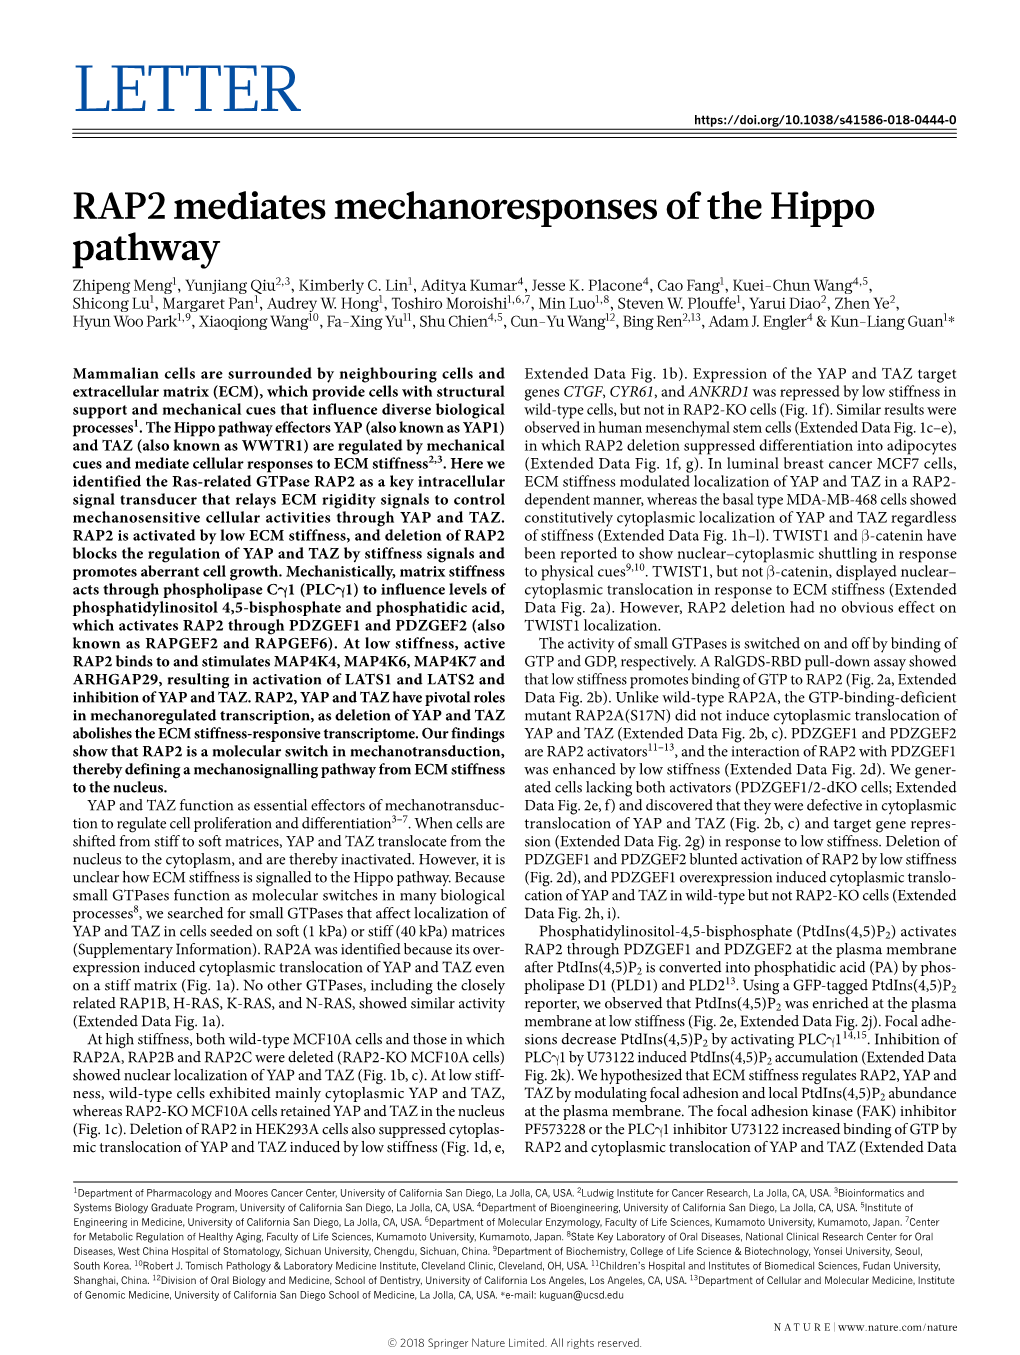 RAP2 Mediates Mechanoresponses of the Hippo Pathway Zhipeng Meng1, Yunjiang Qiu2,3, Kimberly C